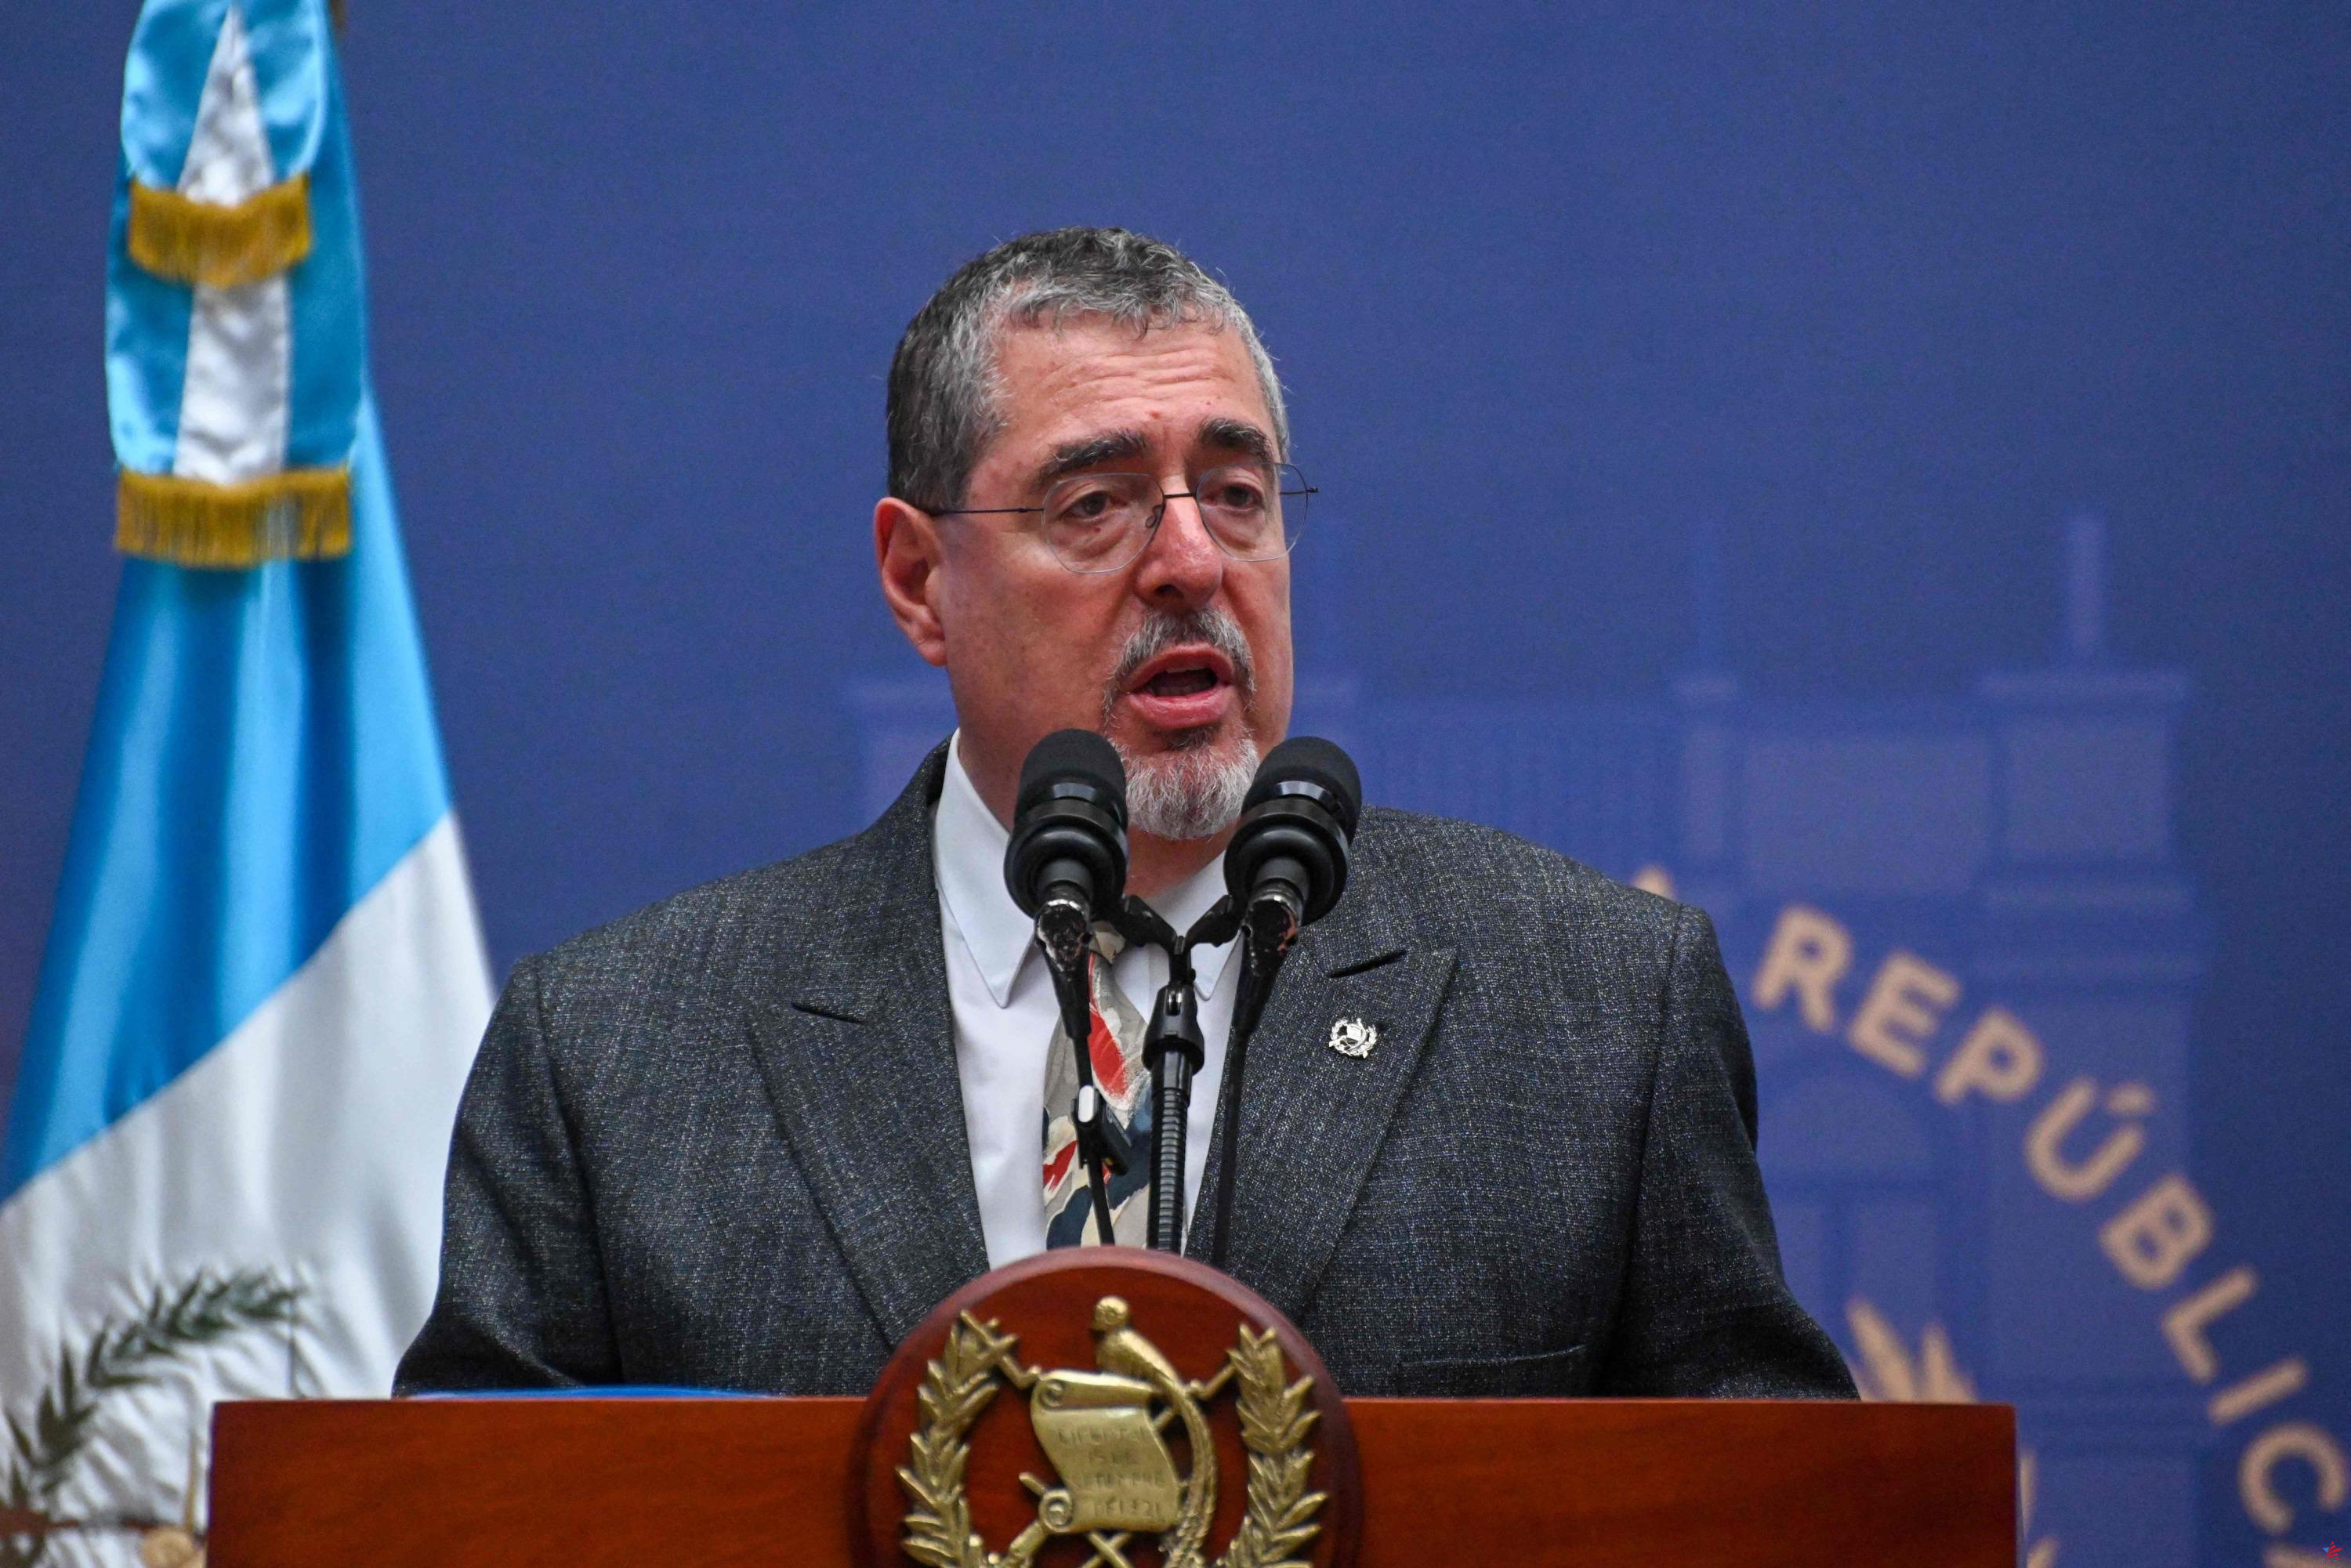 Presidente guatemalteco despide a ministro por “mal uso de recursos estatales”